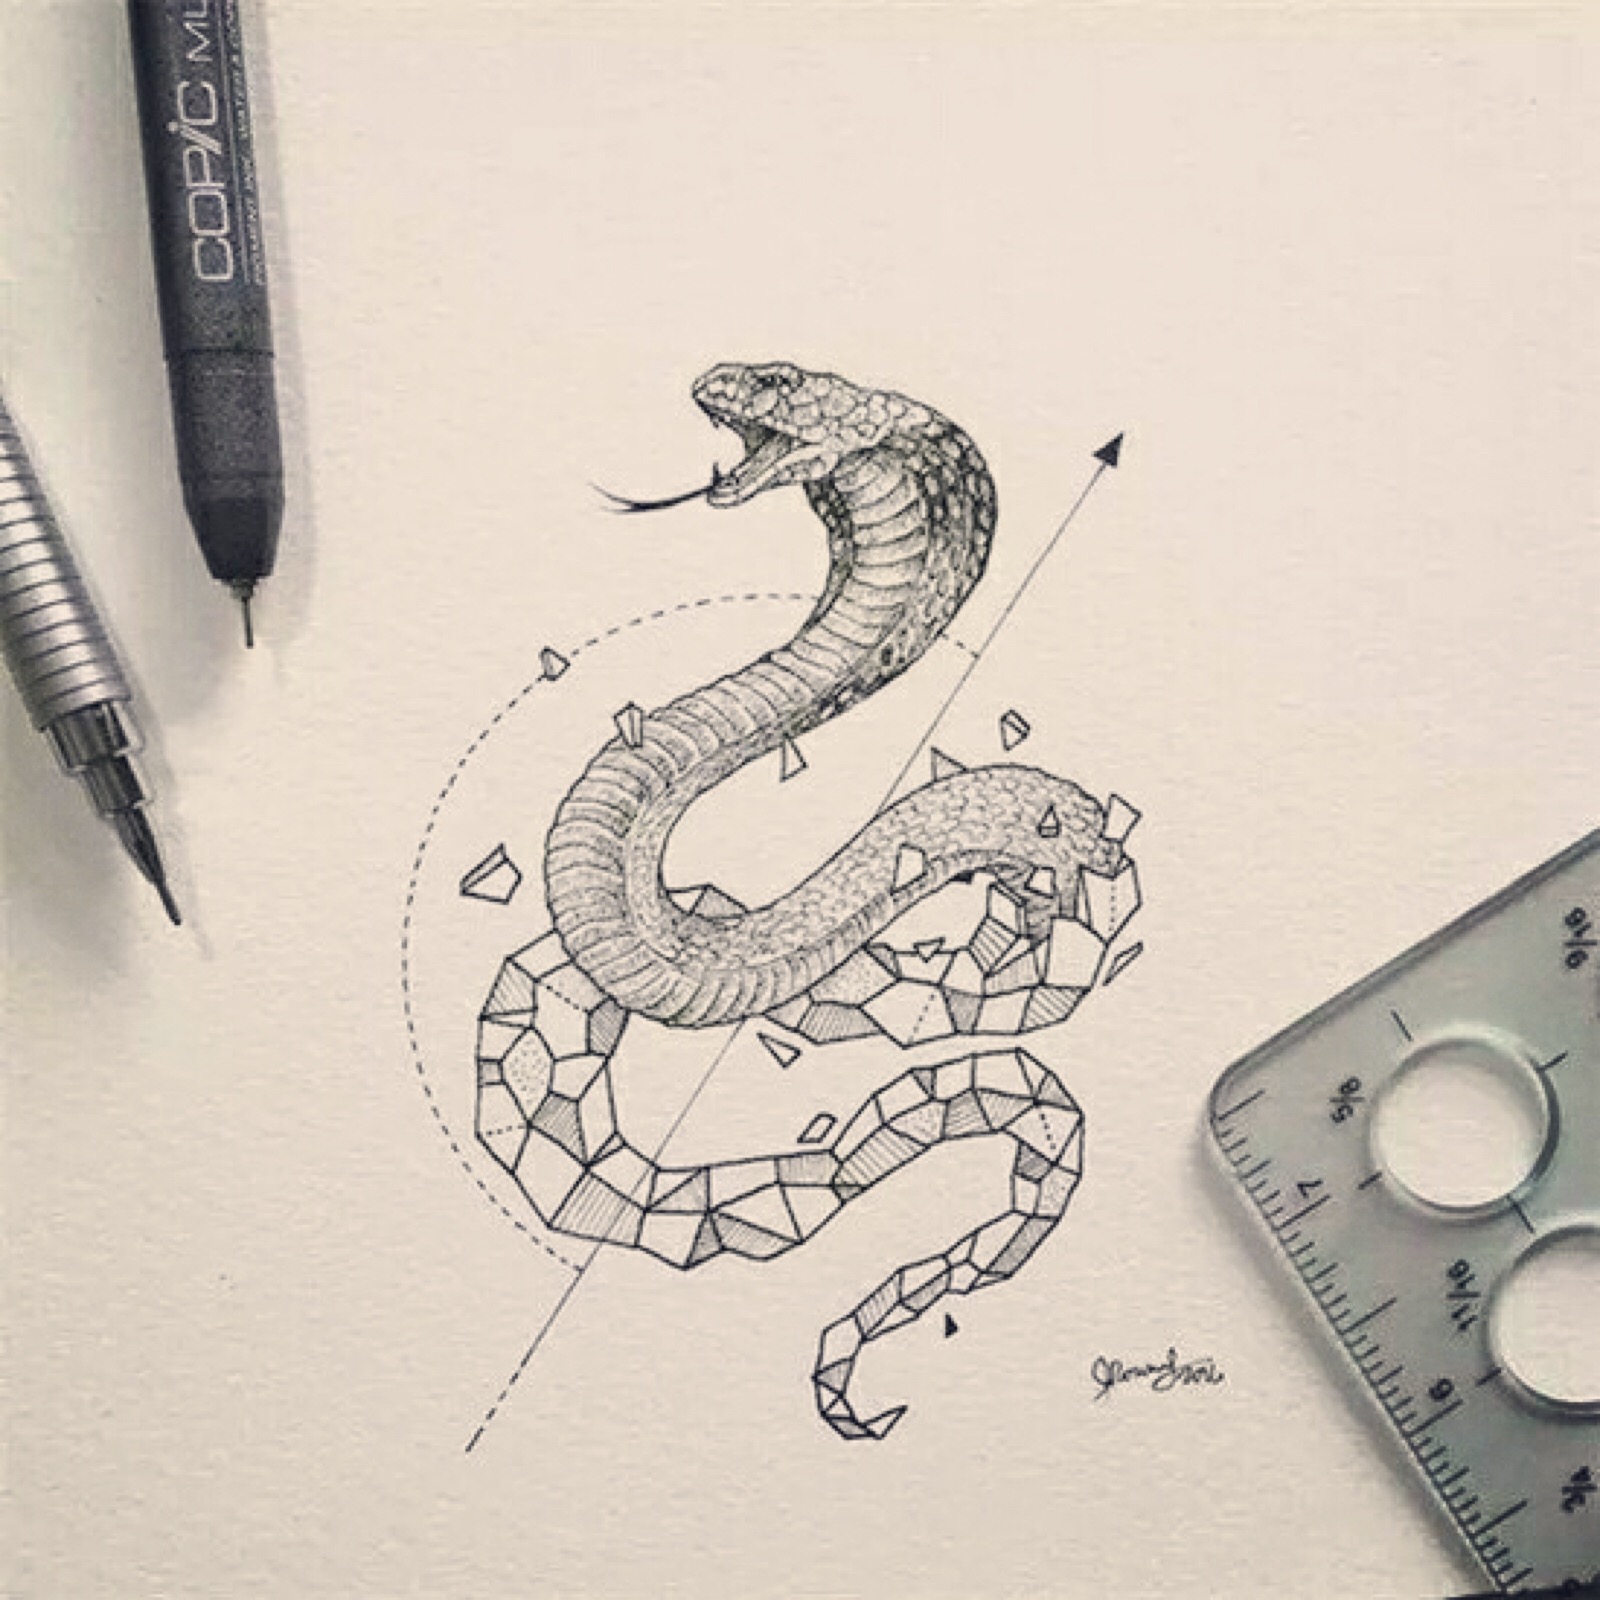 眼镜蛇的画法图片